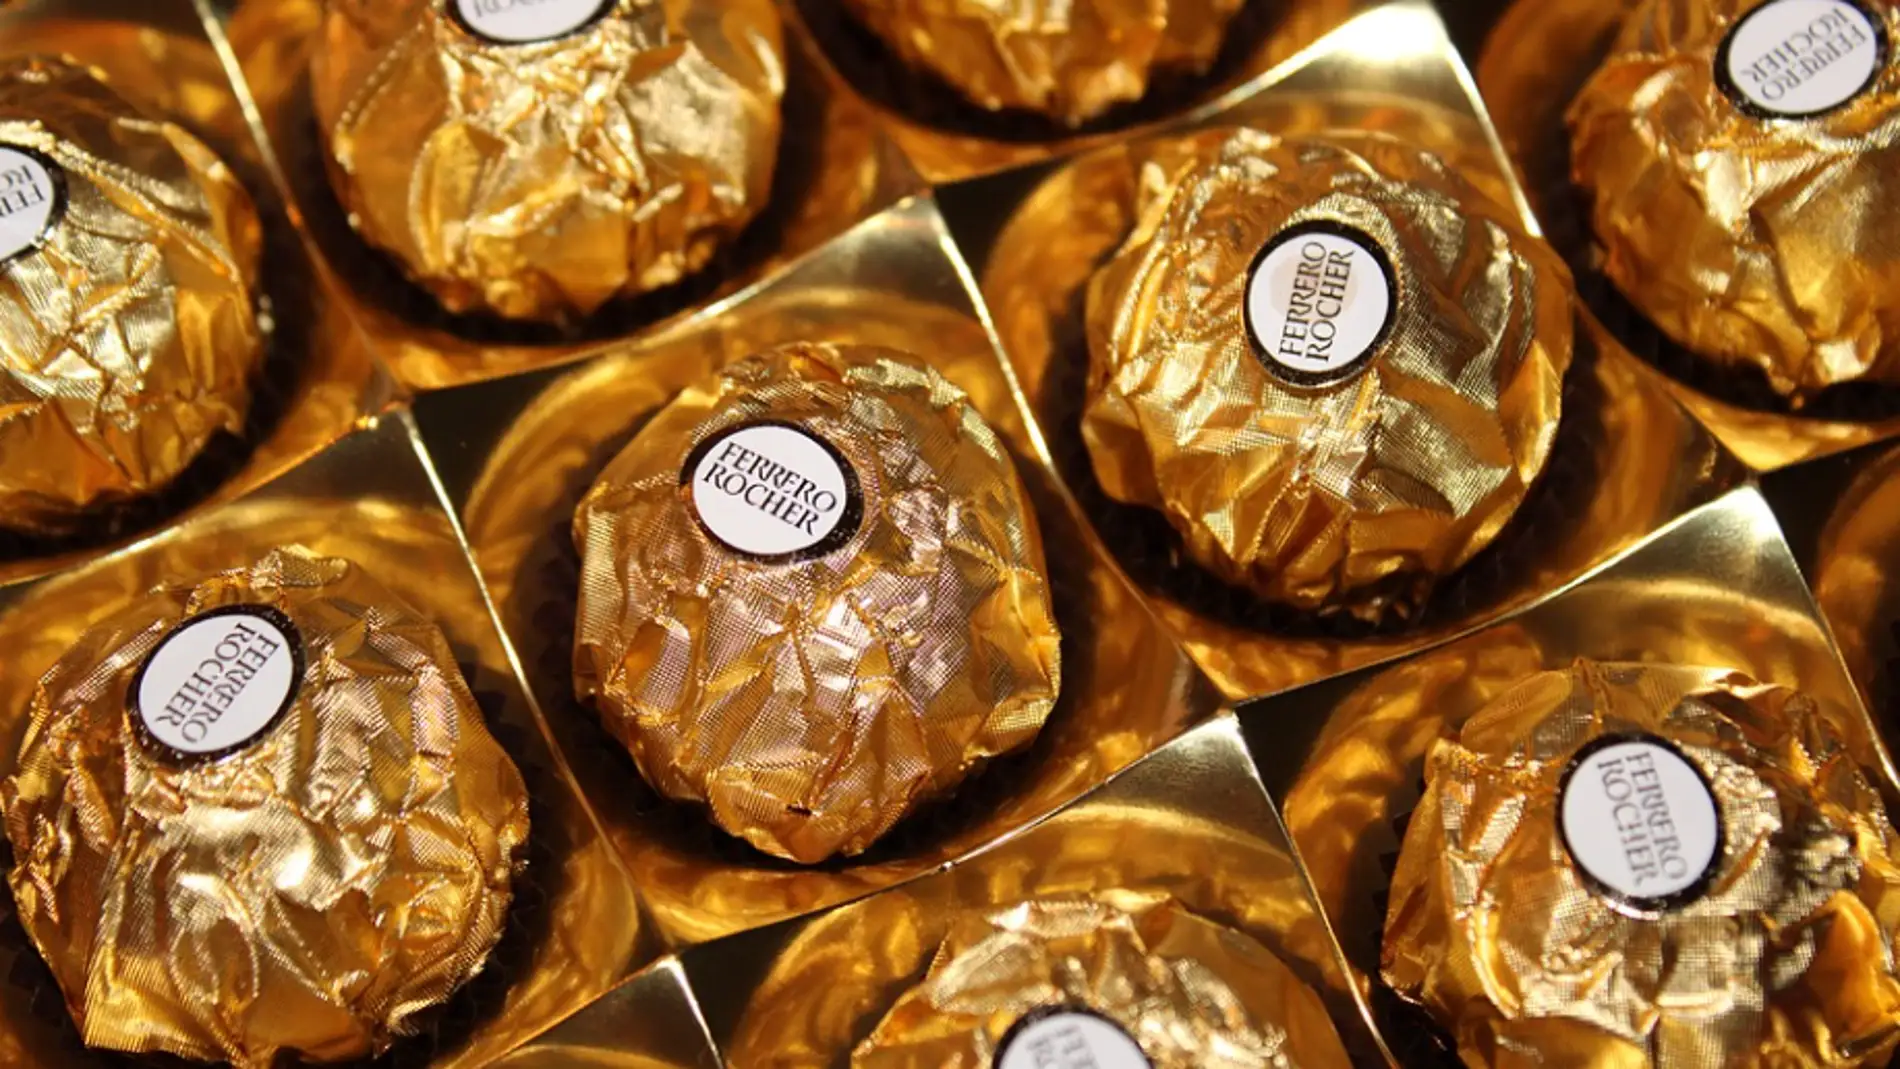 Unos bombones Ferrero Rocher, uno de los dulces más consumidos en Navidad